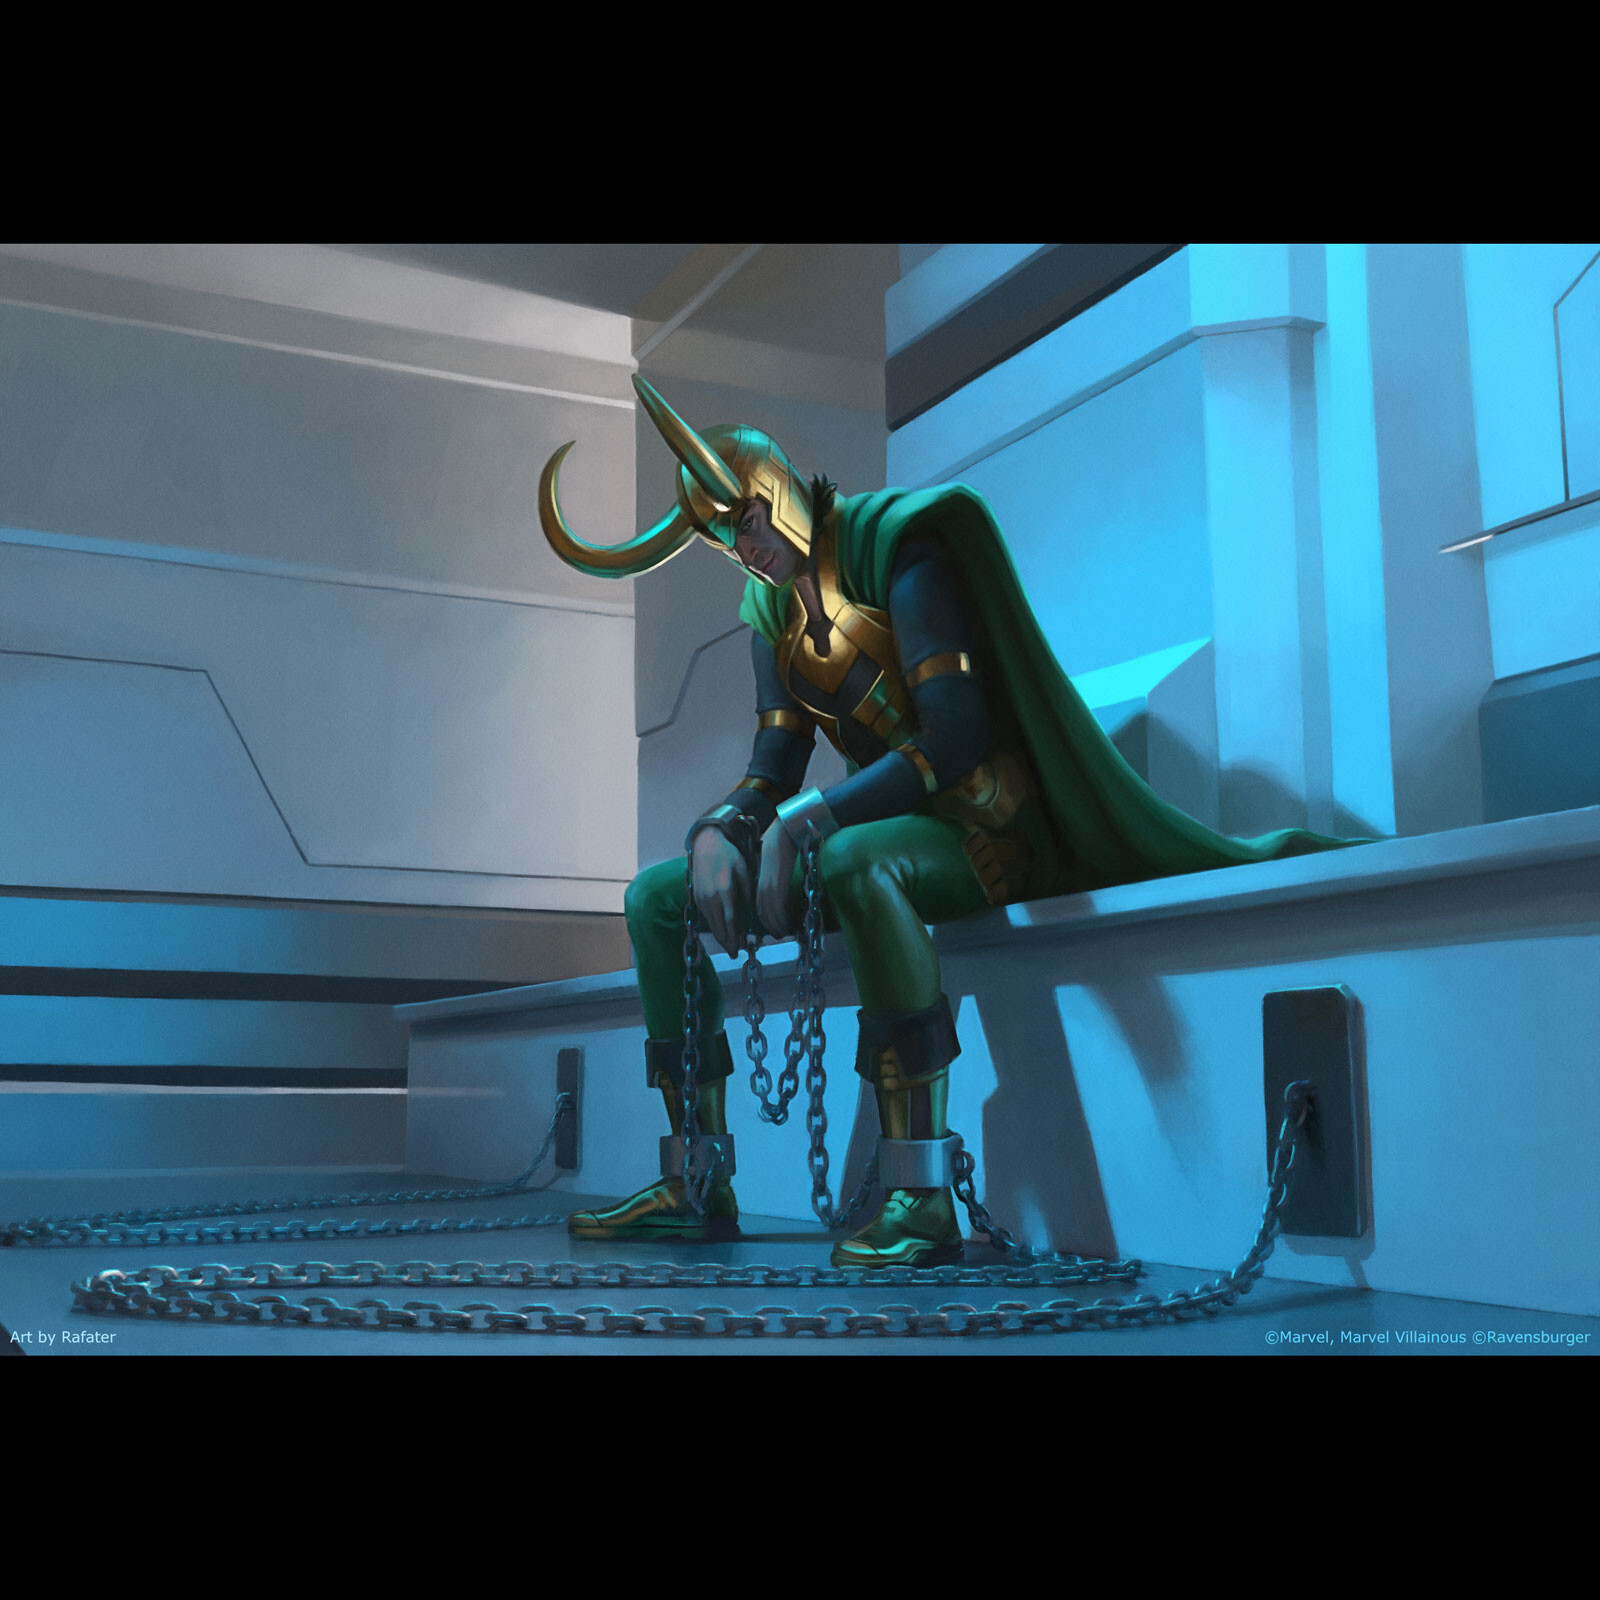 Marvel Villainous - Mischief and Malice - Loki - Banished